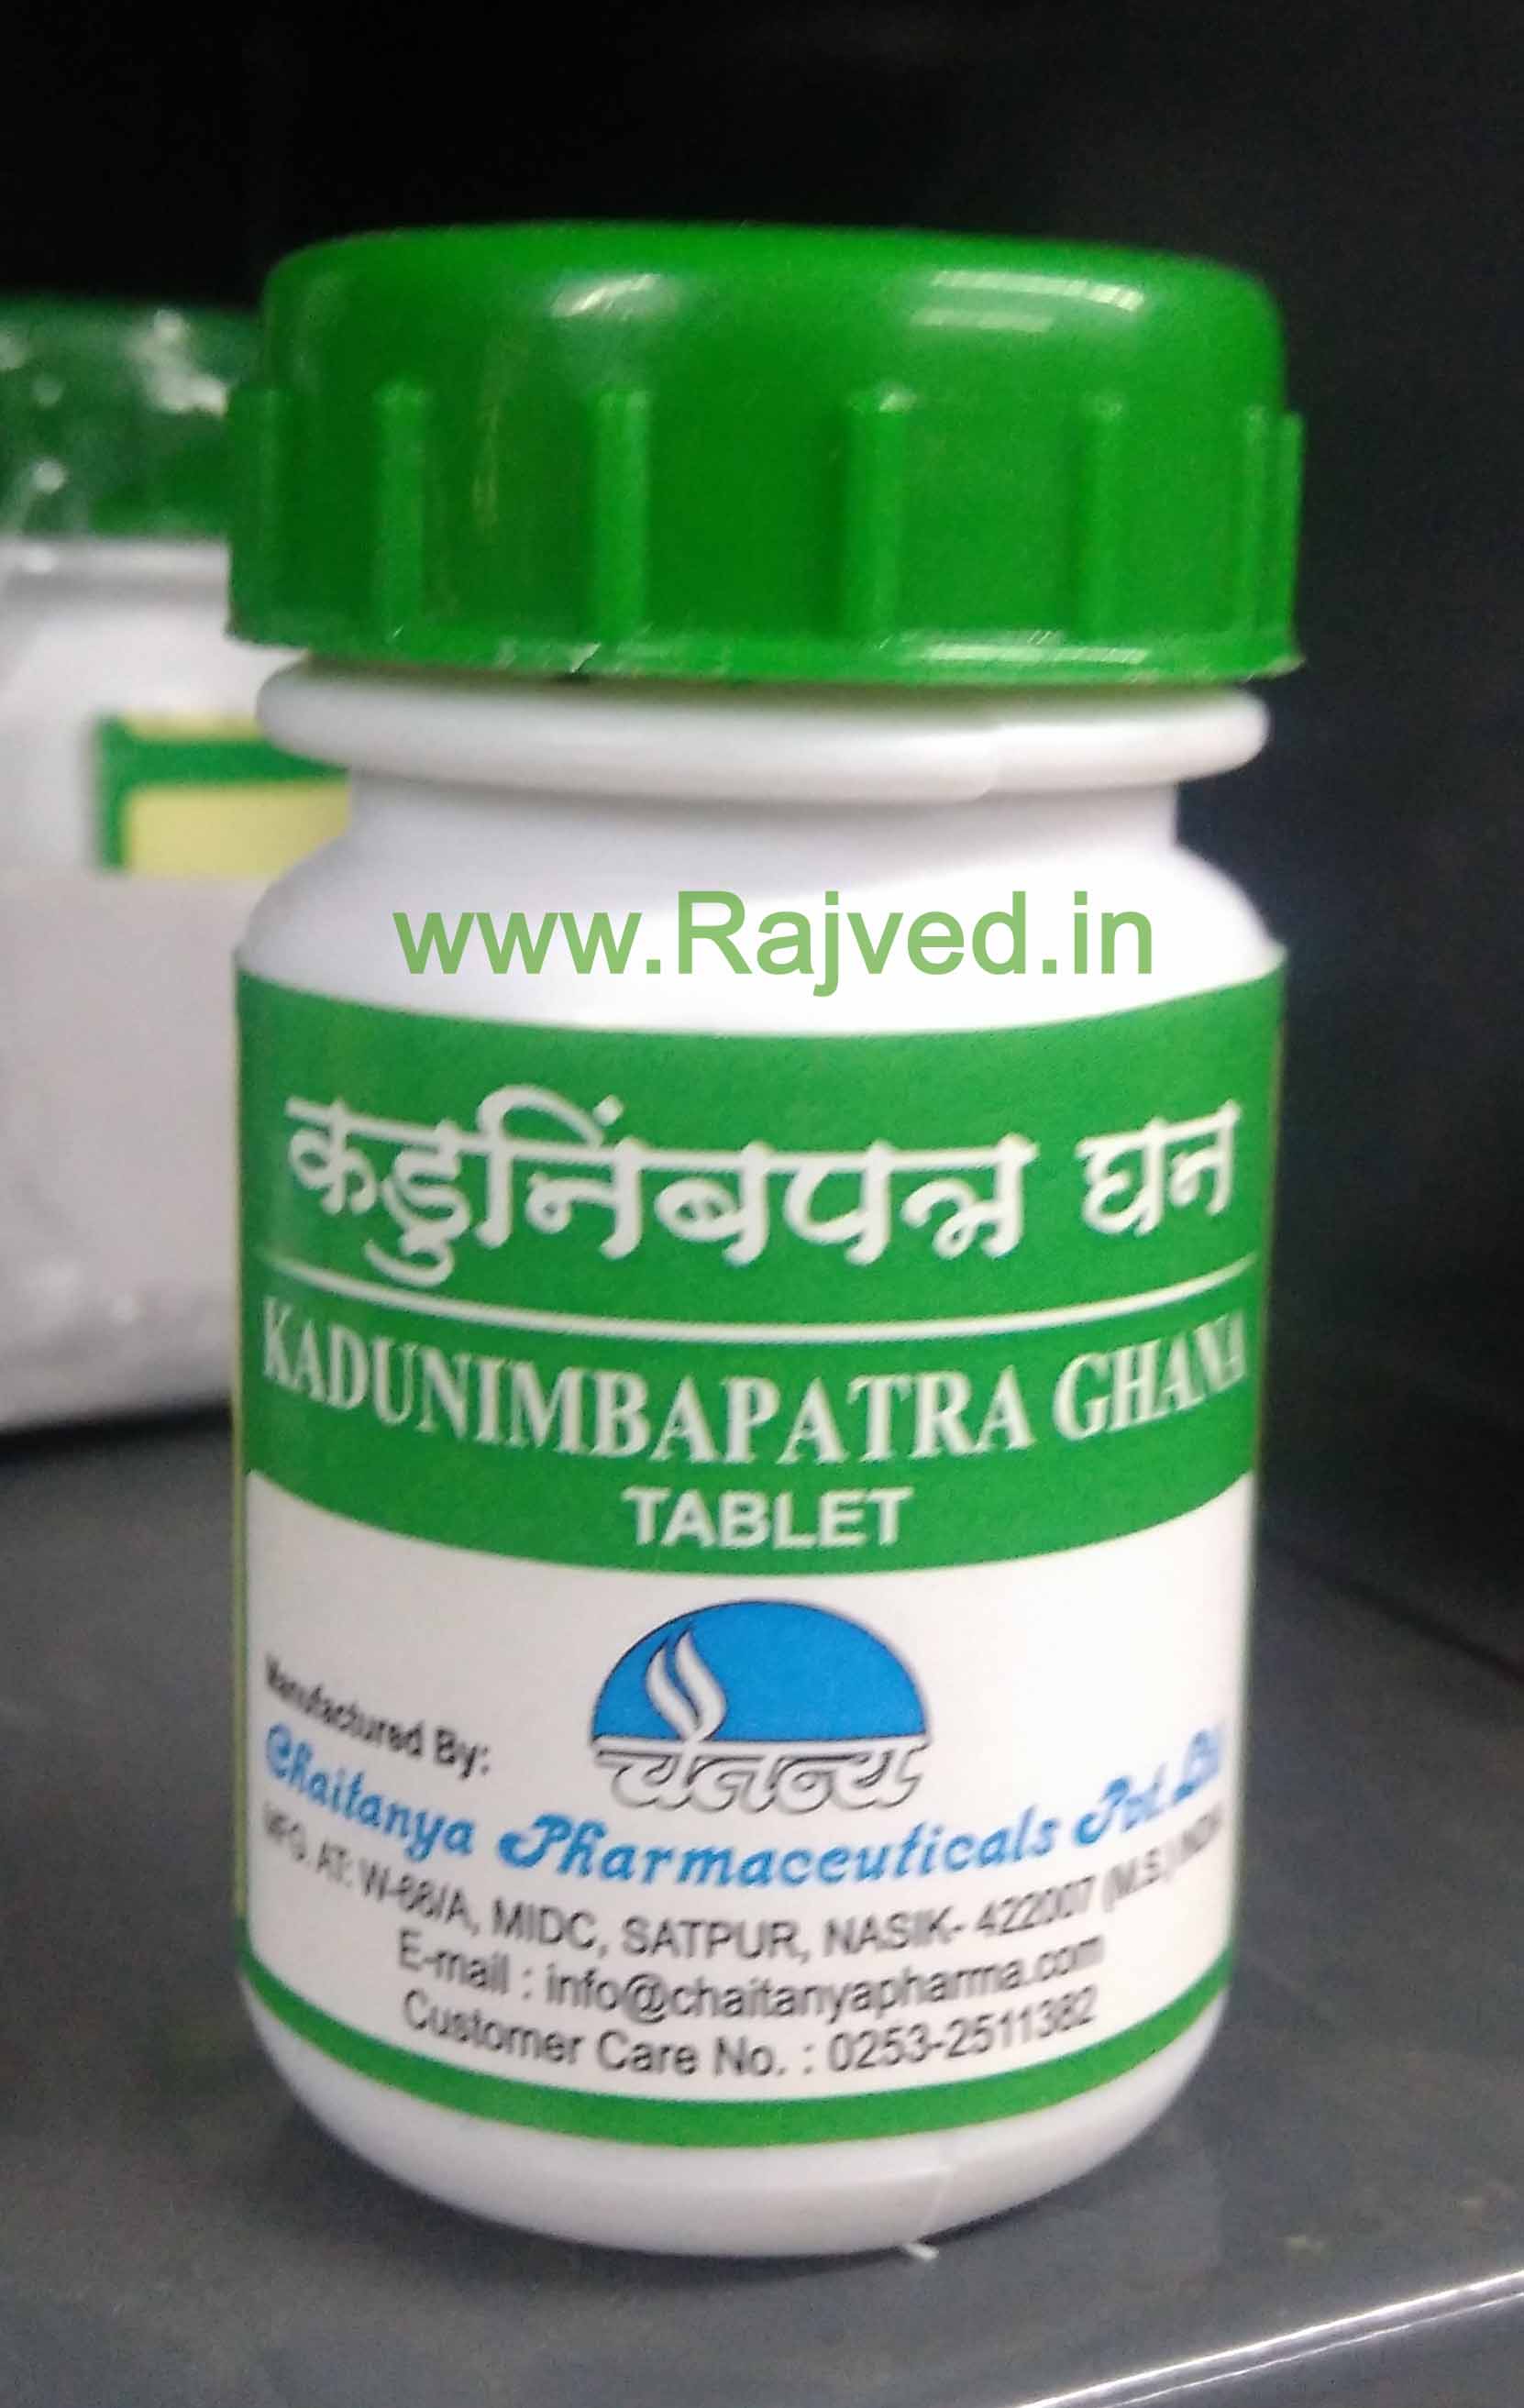 kadunimbapatra ghana 60tab chaitanya pharmaceuticals upto 20% off